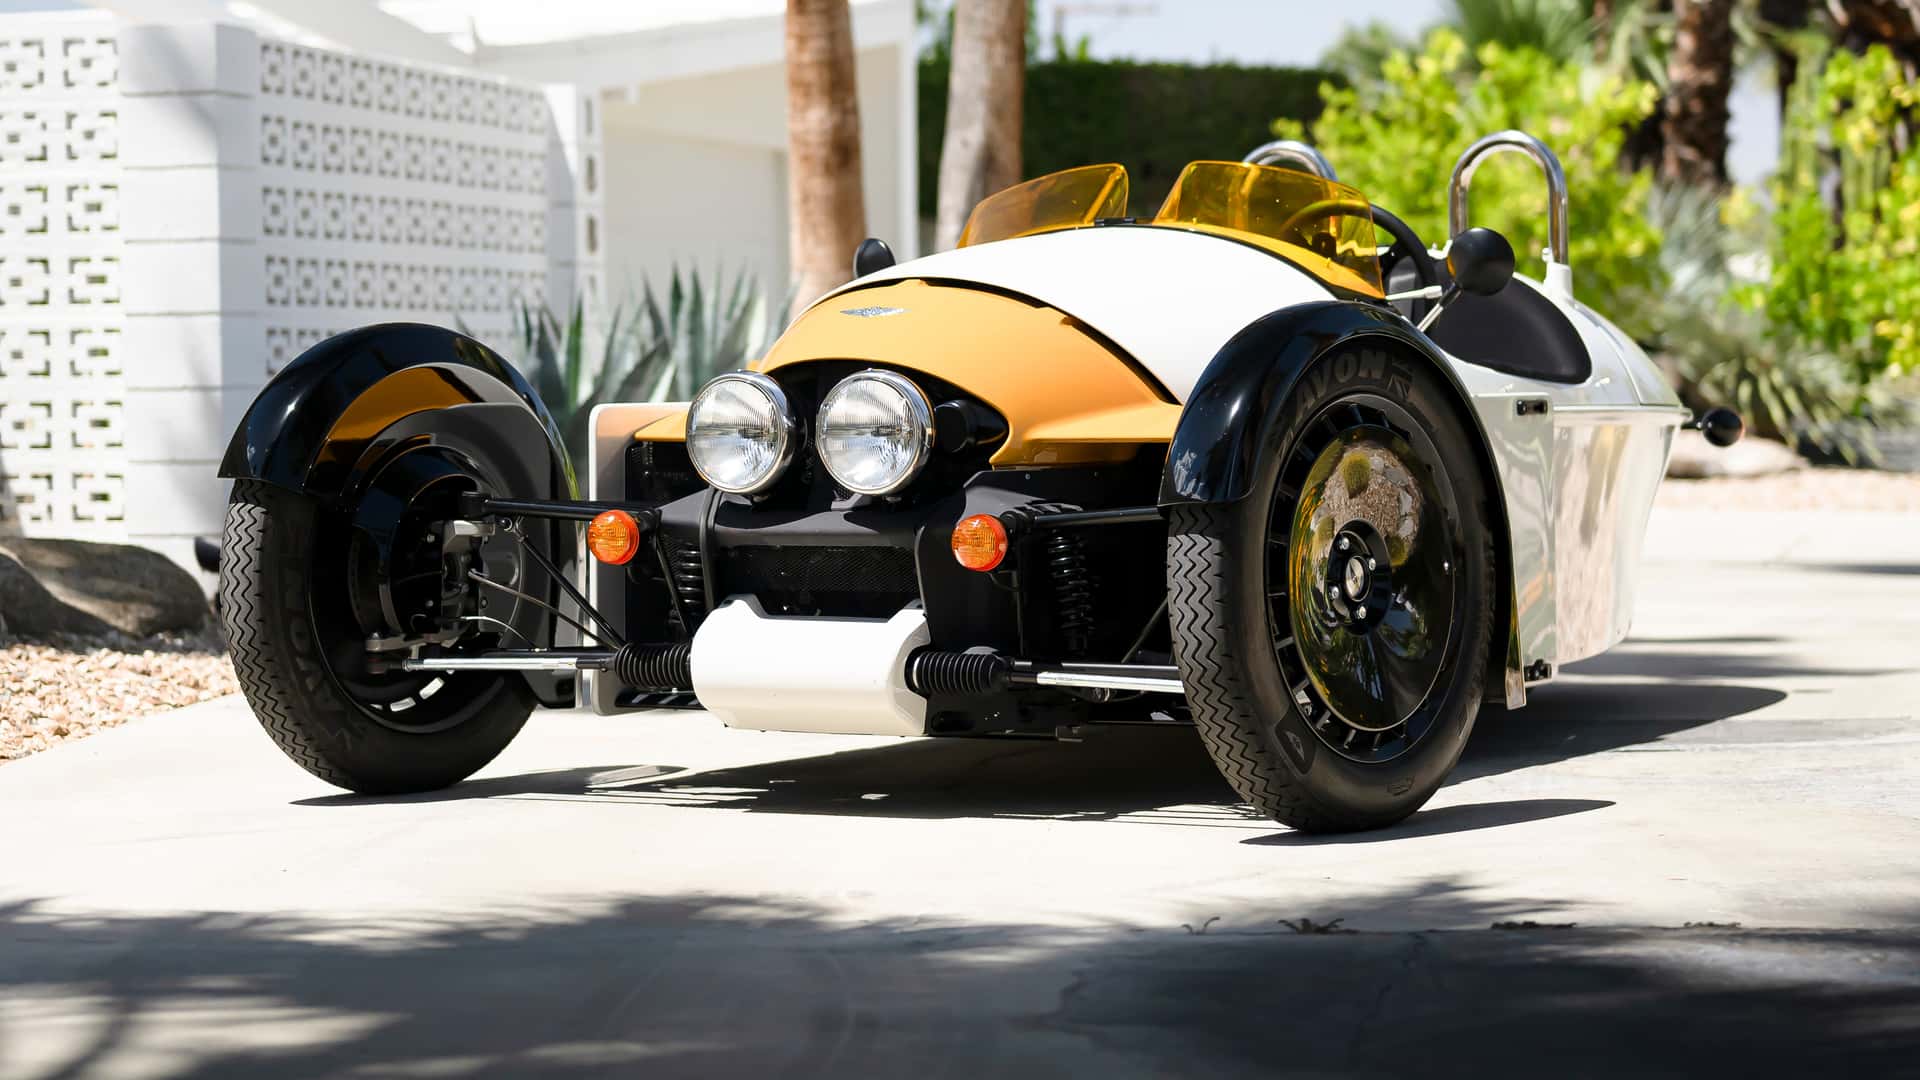 شركة مورجان تطرح سيارة جديدة ثلاثية العجلات باسم سوبر 3 في السوق الأمريكي بمحرك فورد 5